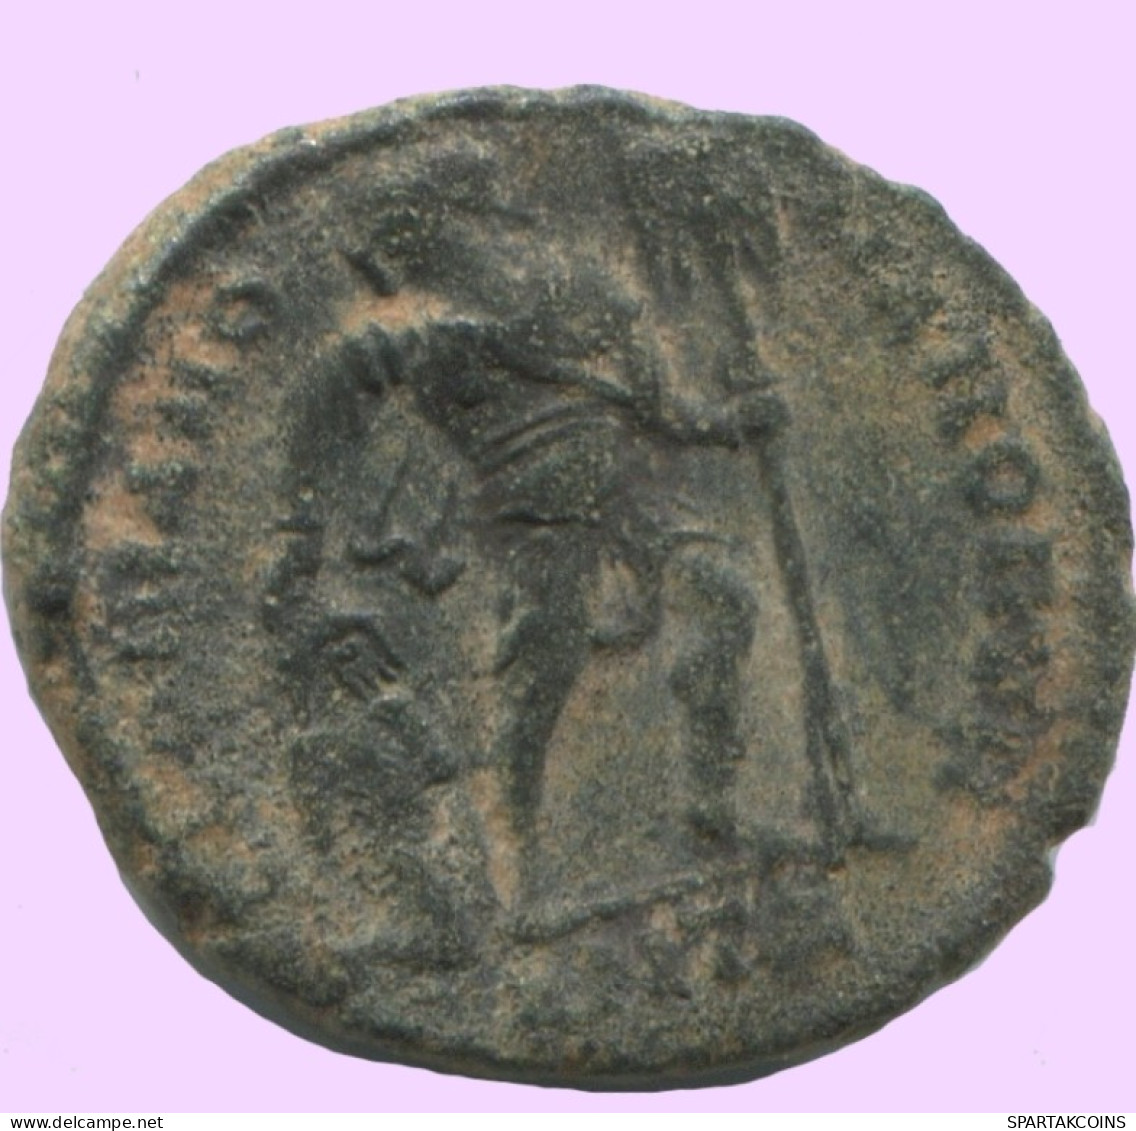 LATE ROMAN EMPIRE Pièce Antique Authentique Roman Pièce 2.6g/18mm #ANT2437.14.F.A - La Fin De L'Empire (363-476)